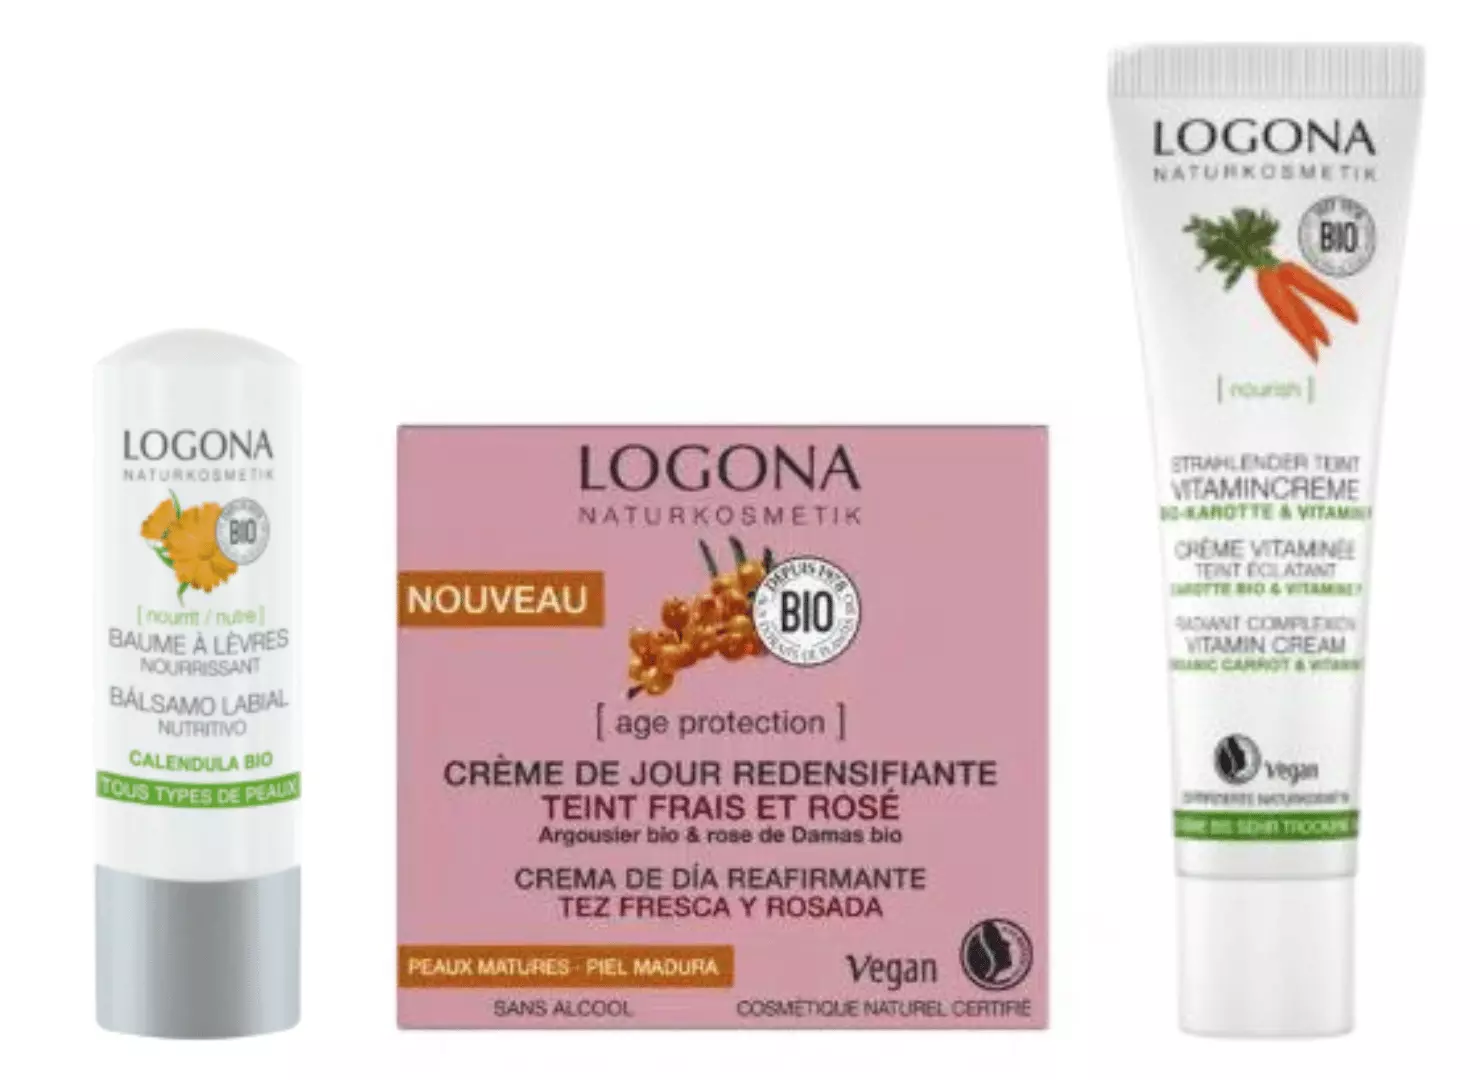 Gamme de produits Logona bio et naturel pour le visage